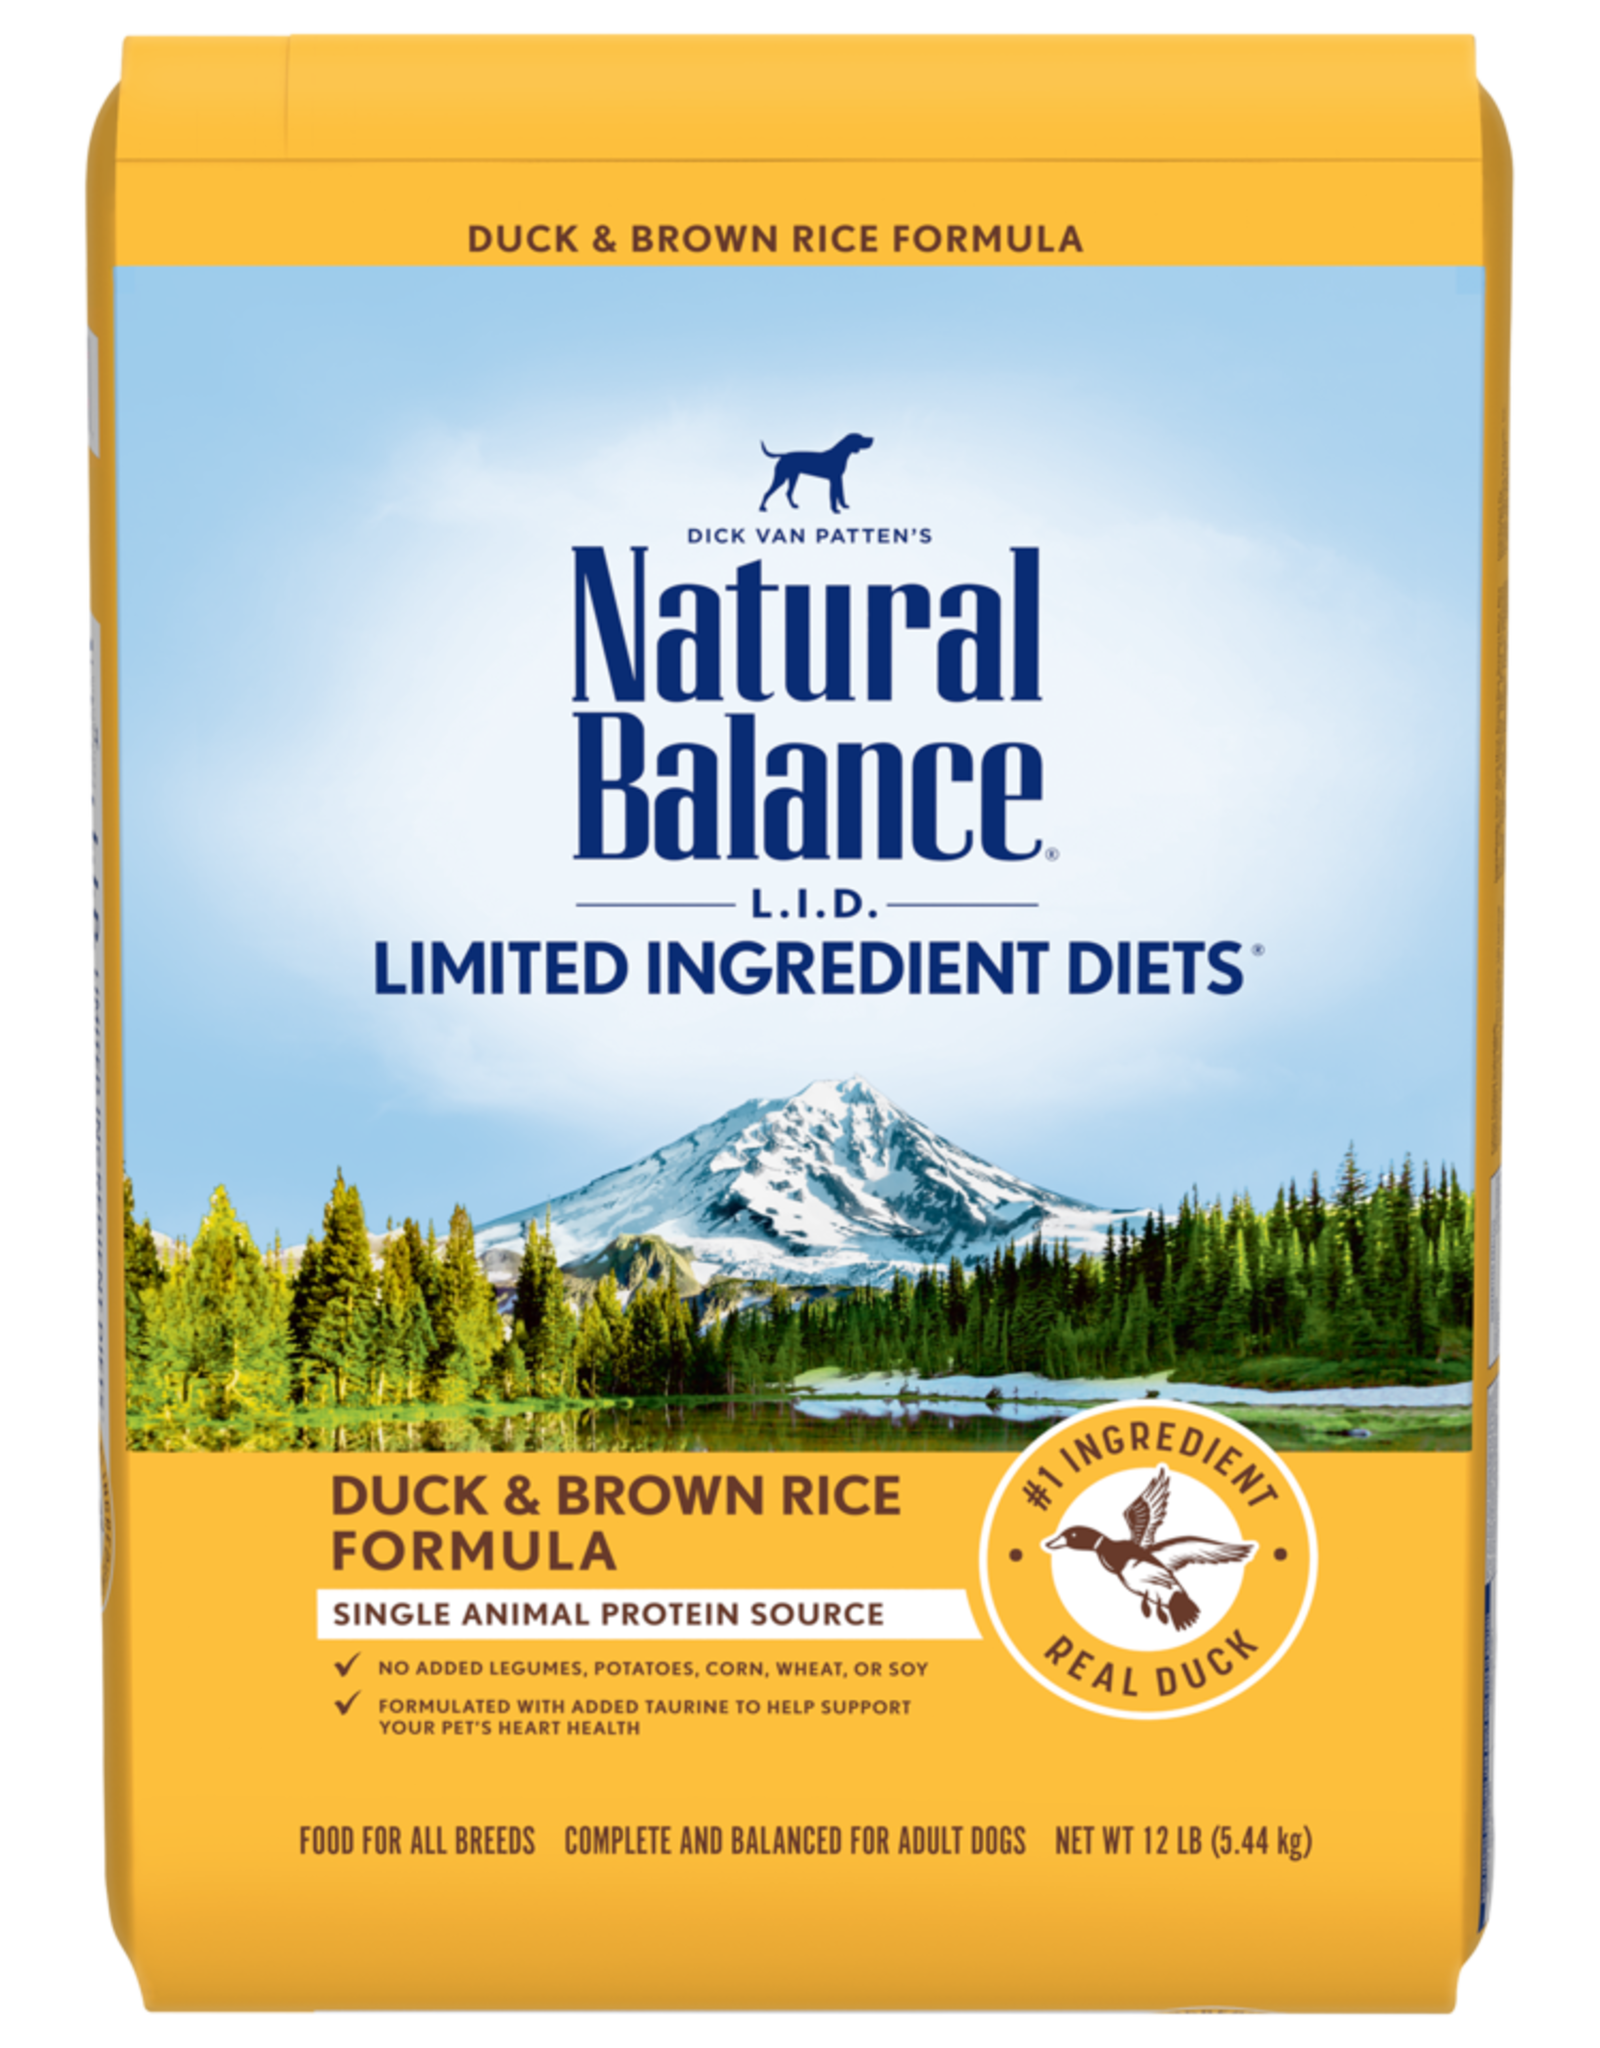 NATURAL BALANCE PET FOODS, INC NATURAL BALANCE LID DUCK & RICE 26LBS